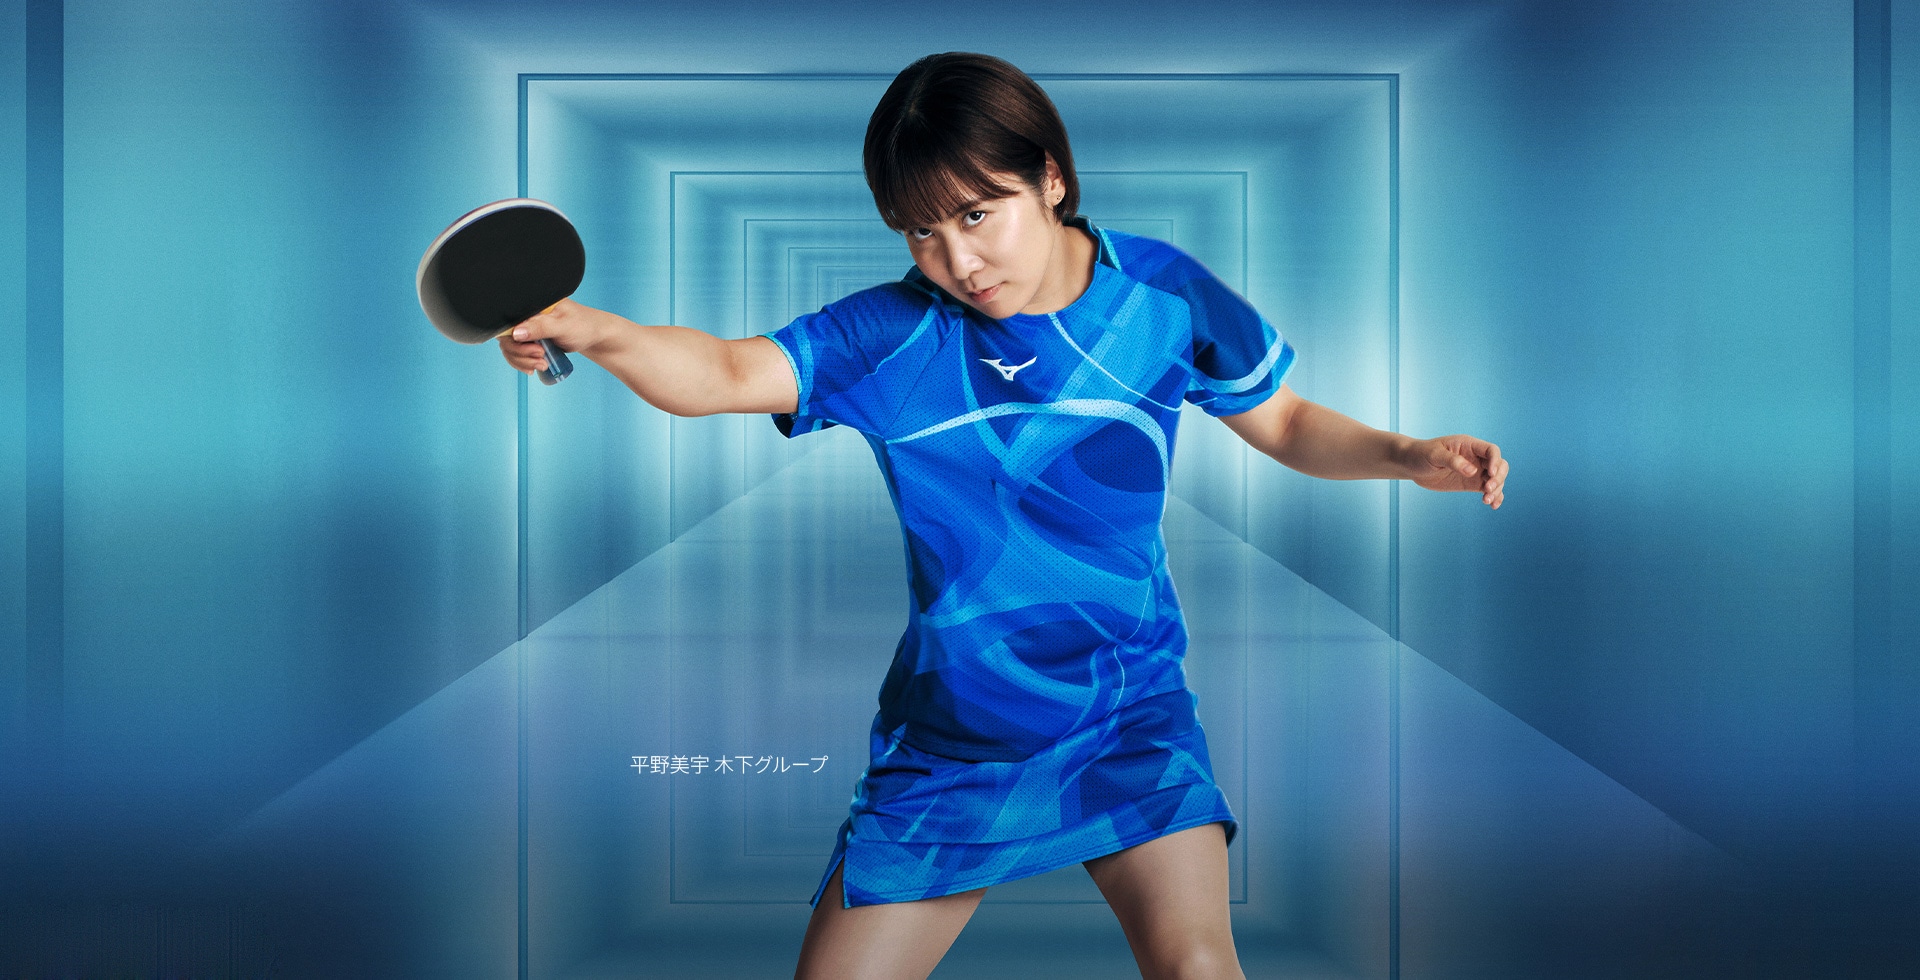 卓球女子日本代表